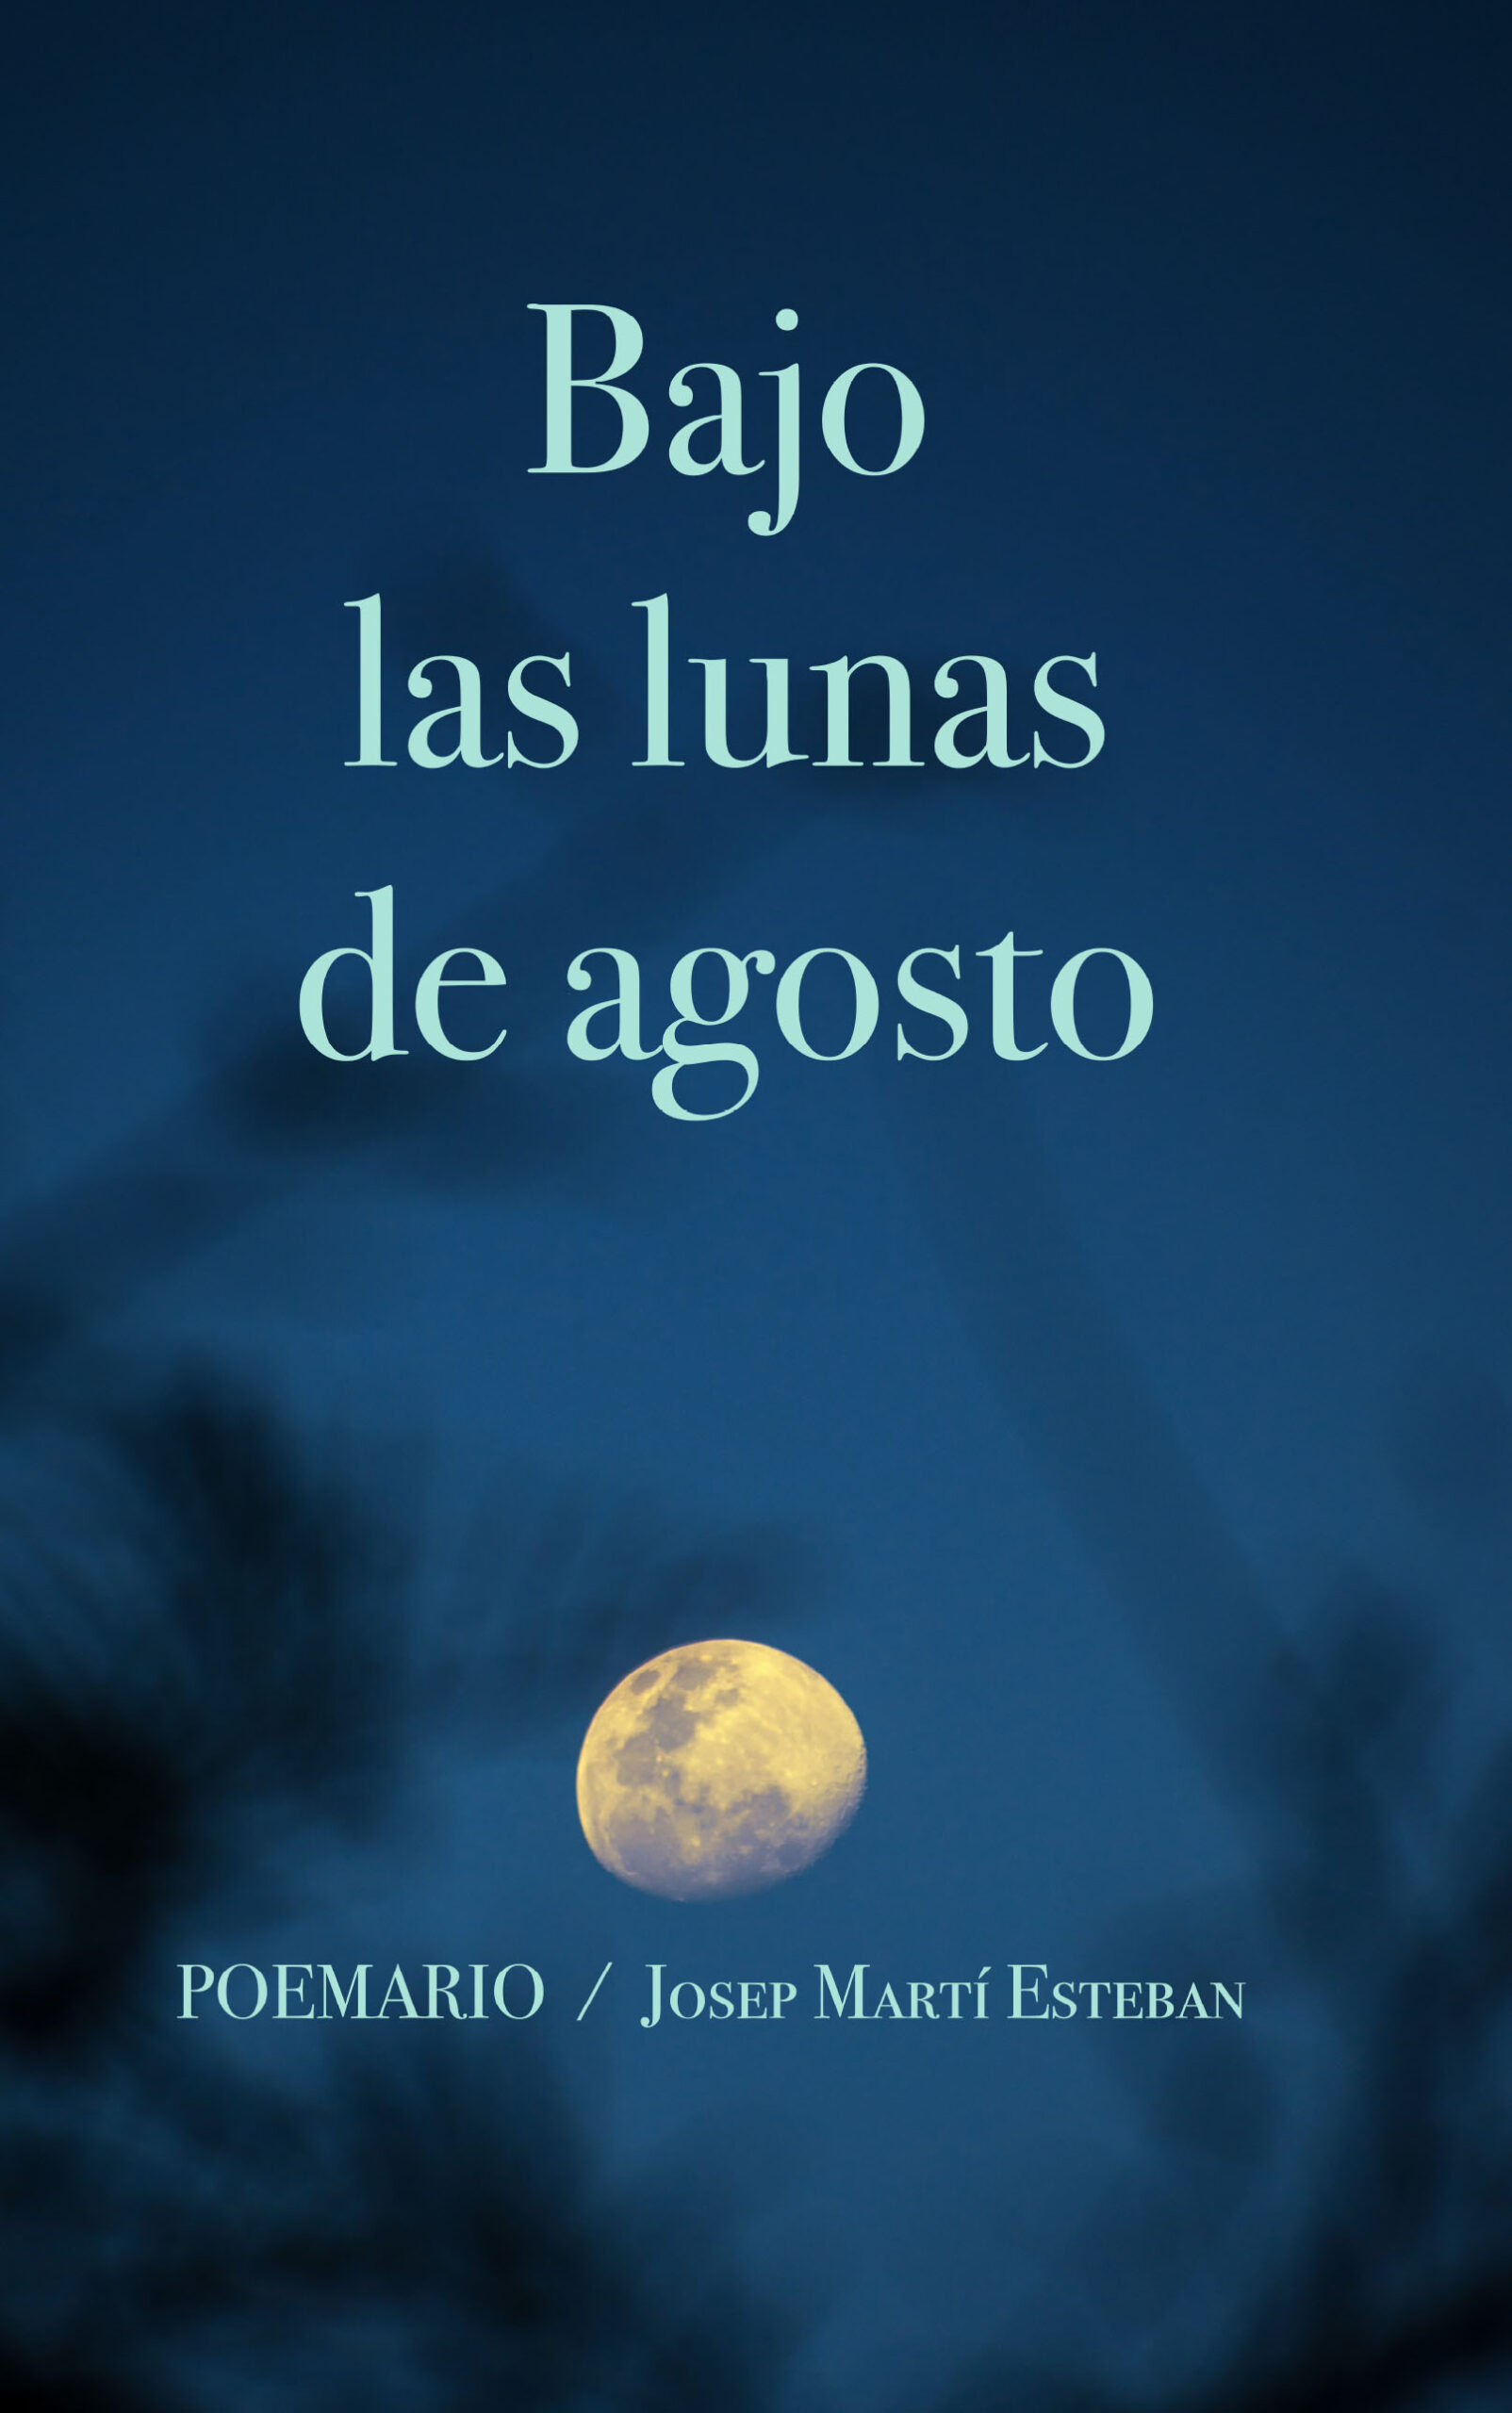 Bajo las lunas de agosto, de Josep Martí Esteban